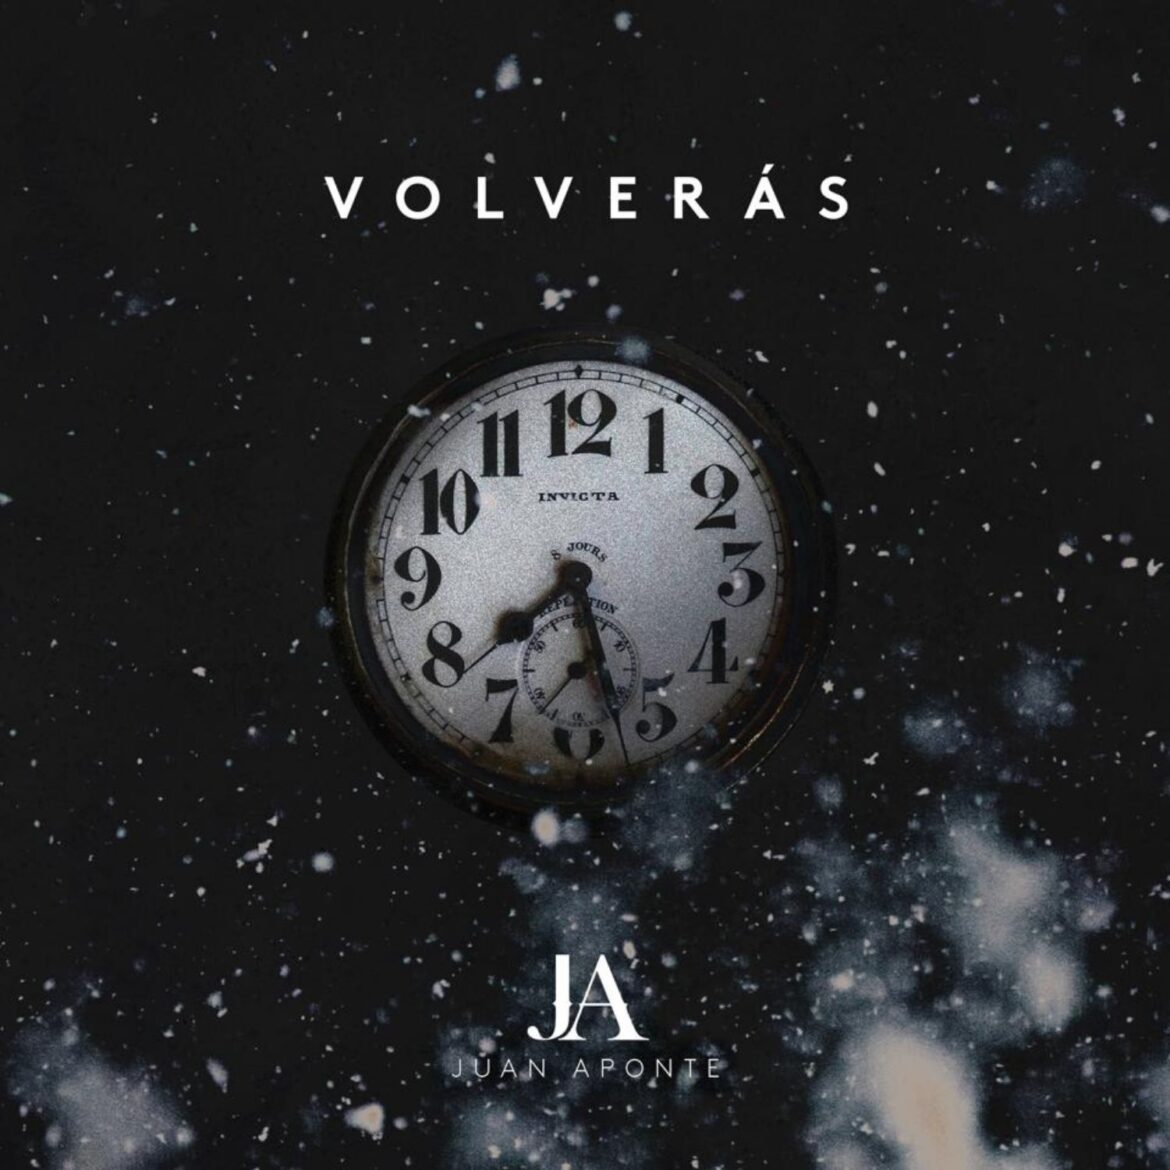 El talento colombiano no da tregua y junto a Juan Aponte, su banda 316 presenta su nuevo sencillo “Volverás”